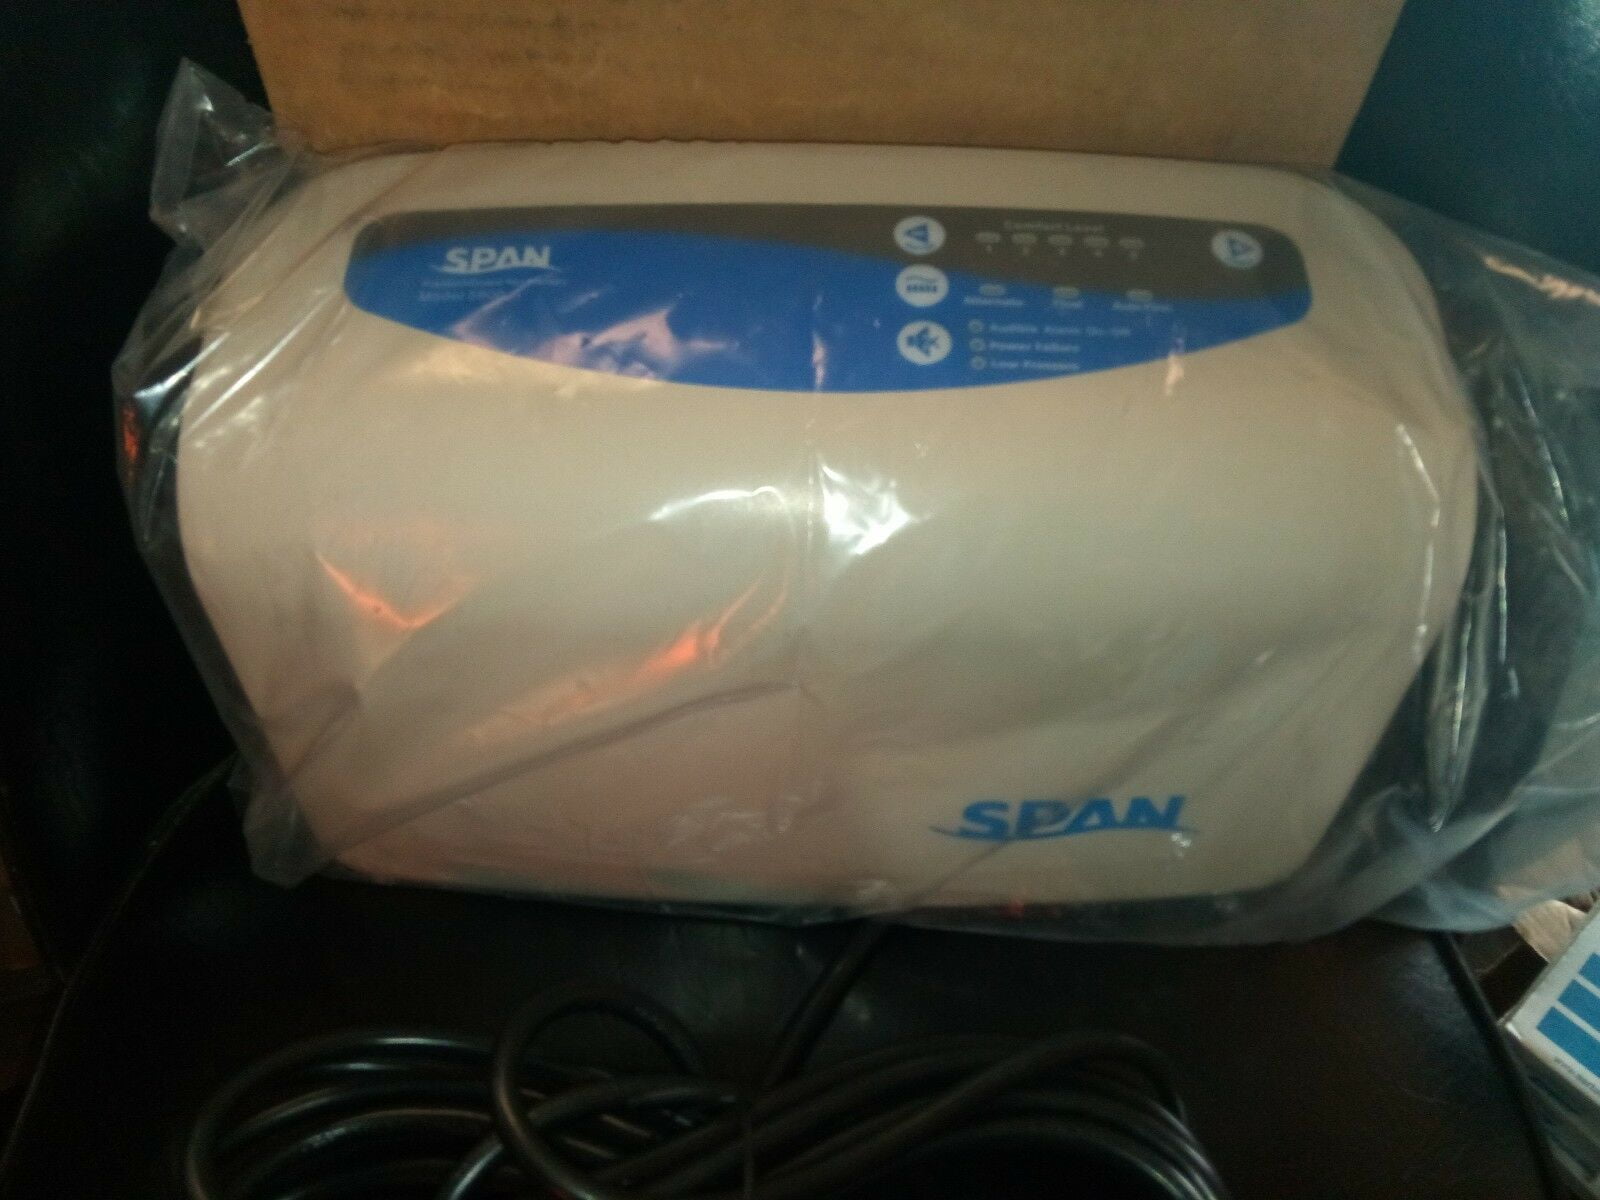 span 5900 air mattress manual